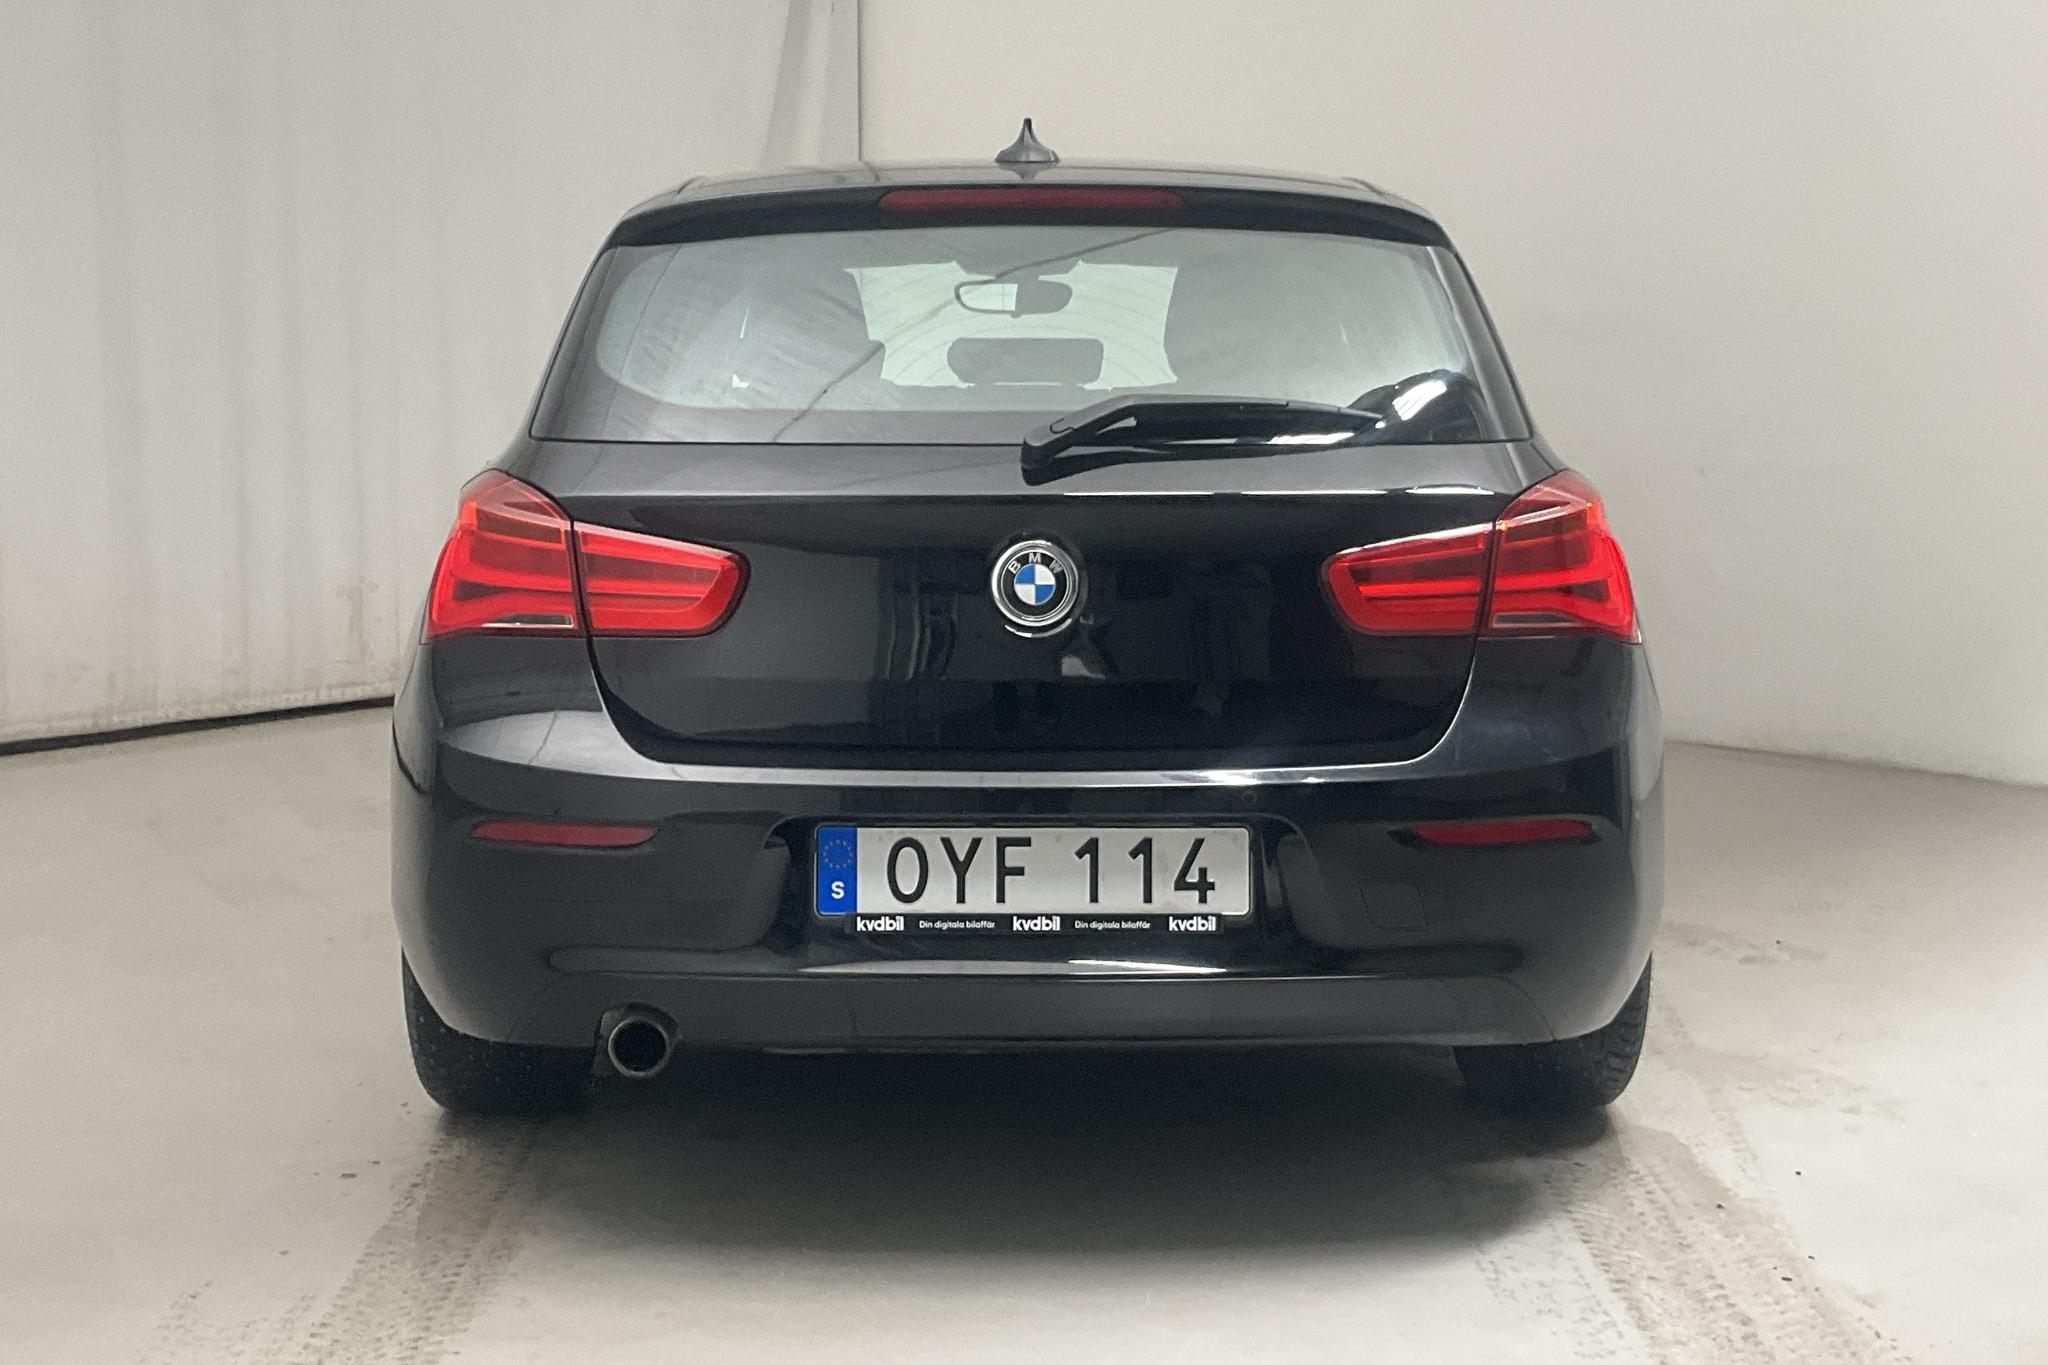 BMW 118i 5dr, F20 (136hk) - 8 569 mil - Automat - svart - 2018